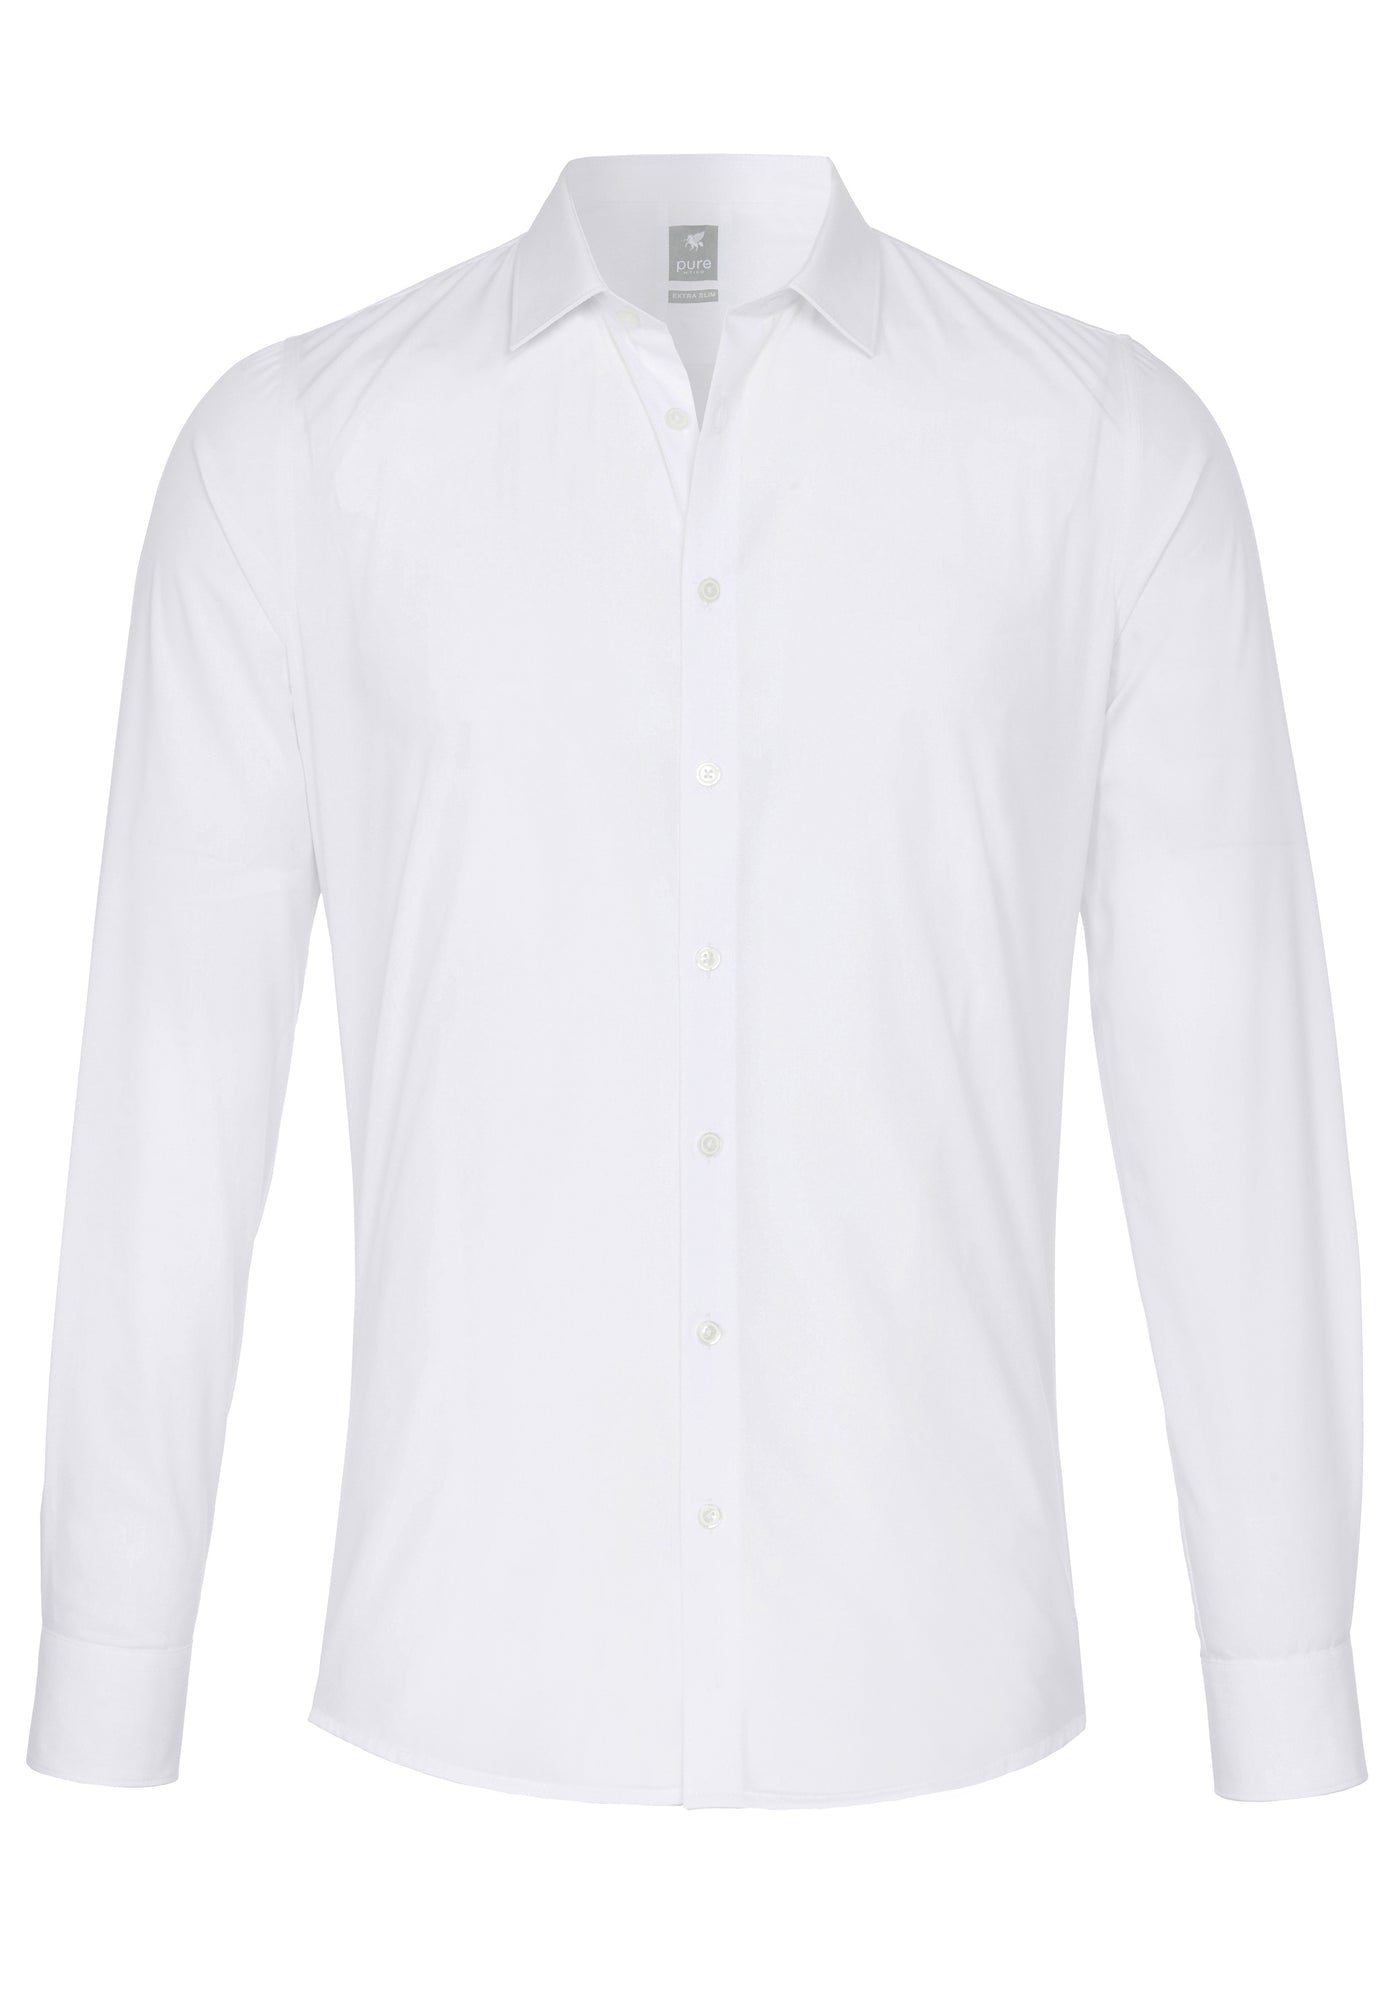 3384-800 - City Hemd Silver extra lang - weiß - pureshirt